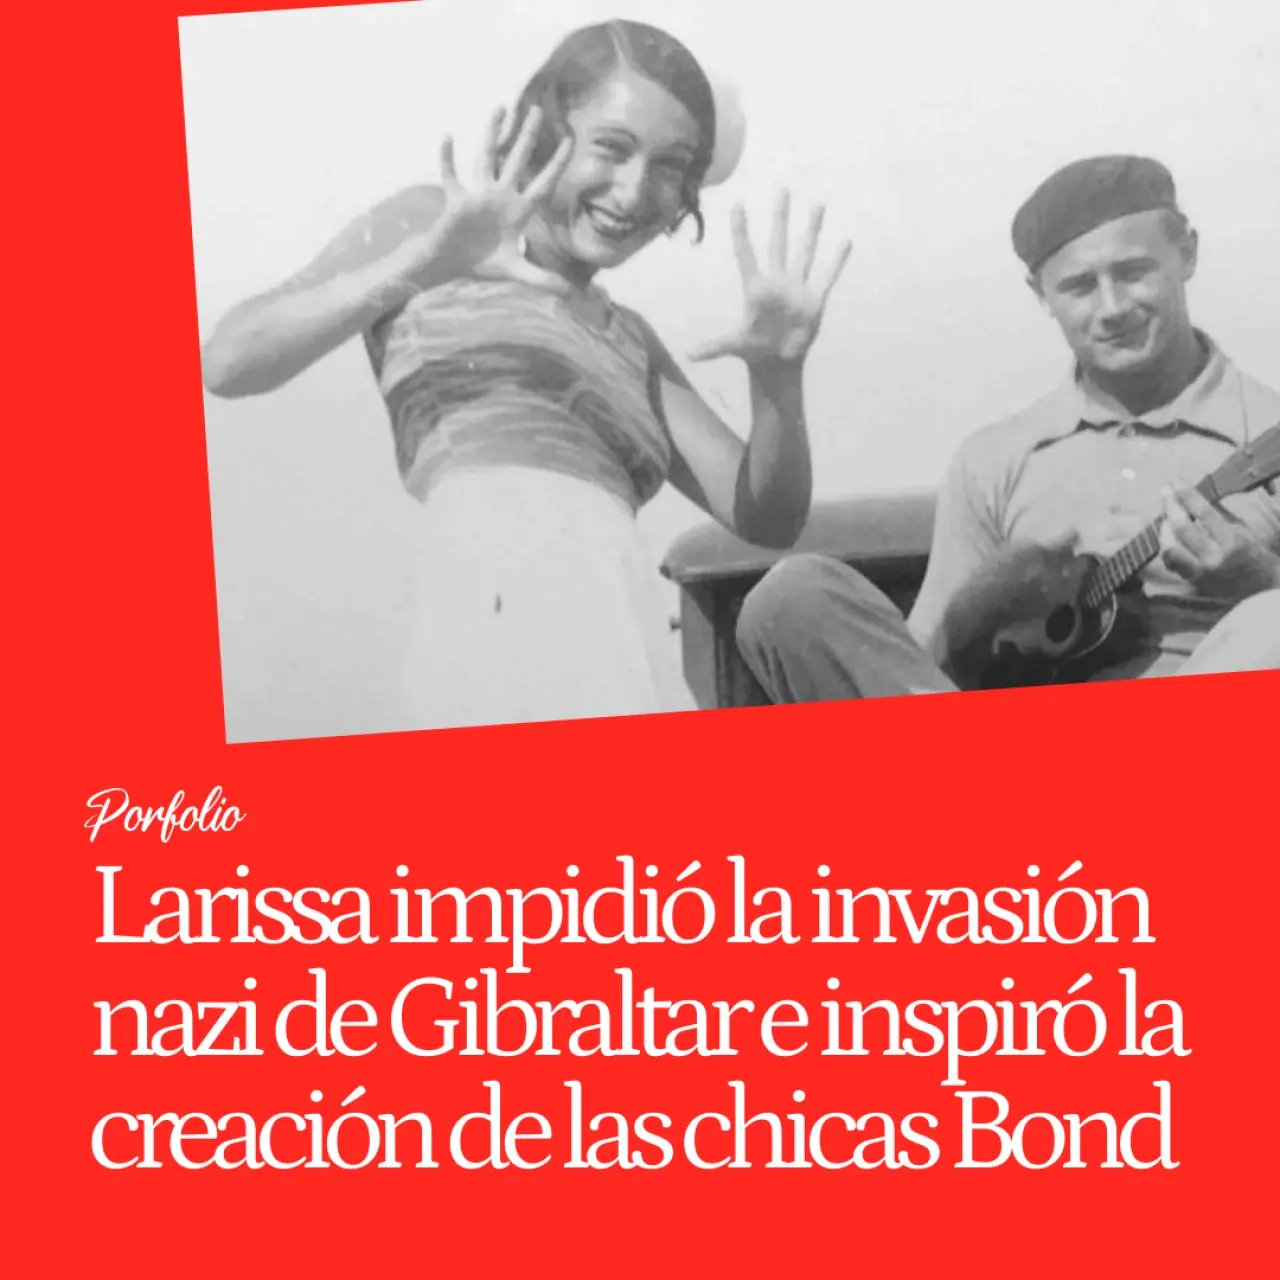 Larissa Swirski, la agente doble que impidió la invasión nazi de Gibraltar e inspiró la creación de las chicas Bond